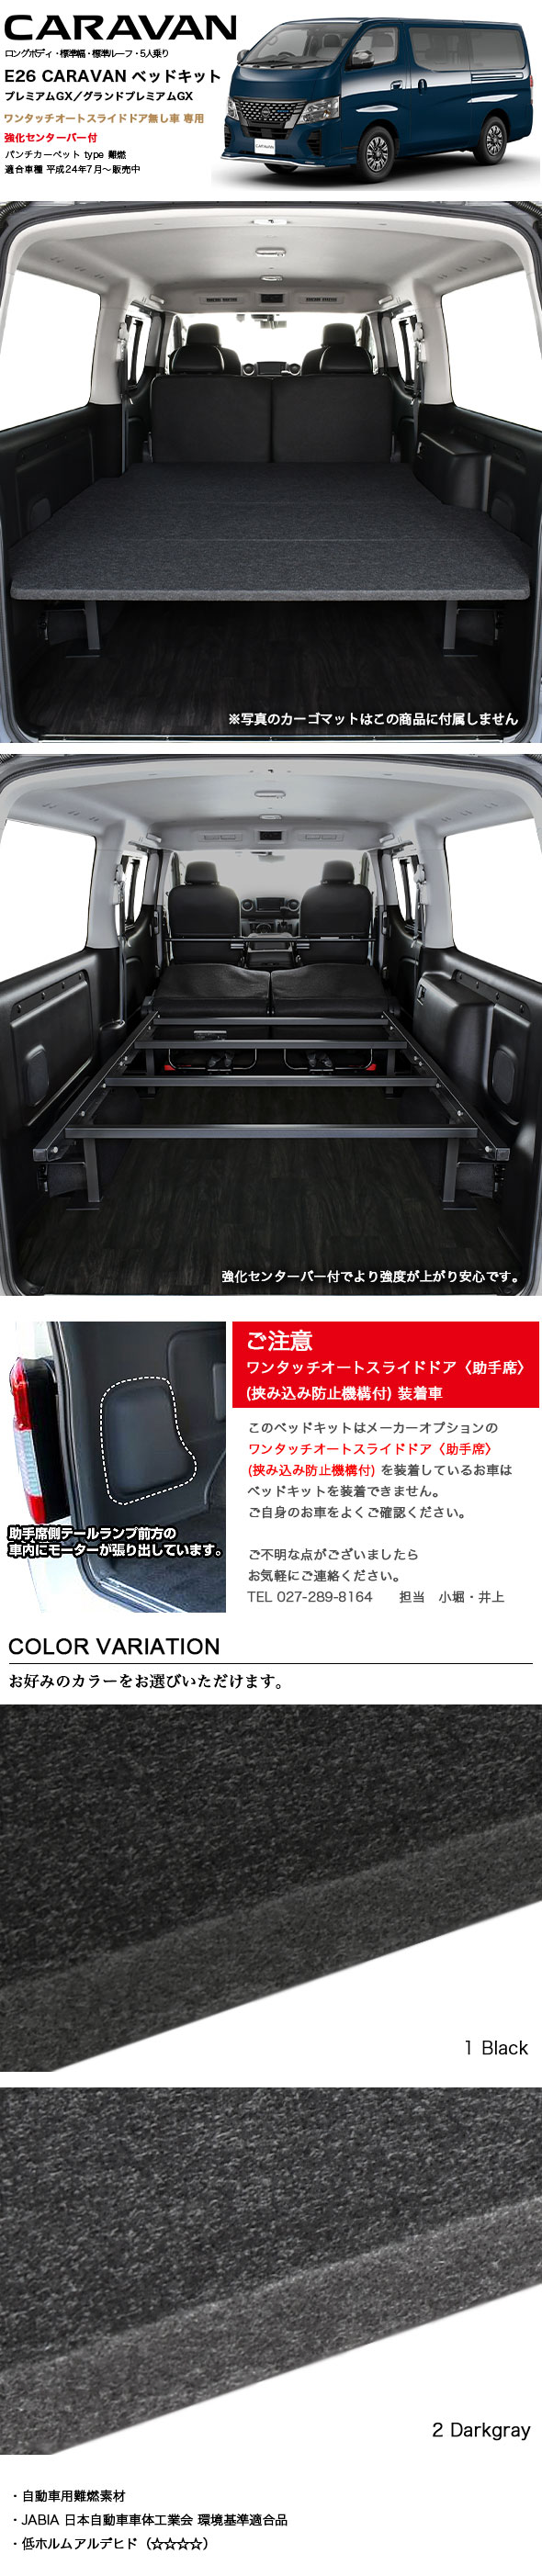 キャラバン ベッドキット 強化センターバー付 E26 プレミアムGX パンチカーペット 日本製 mbk4519 MGR Customs  通販 